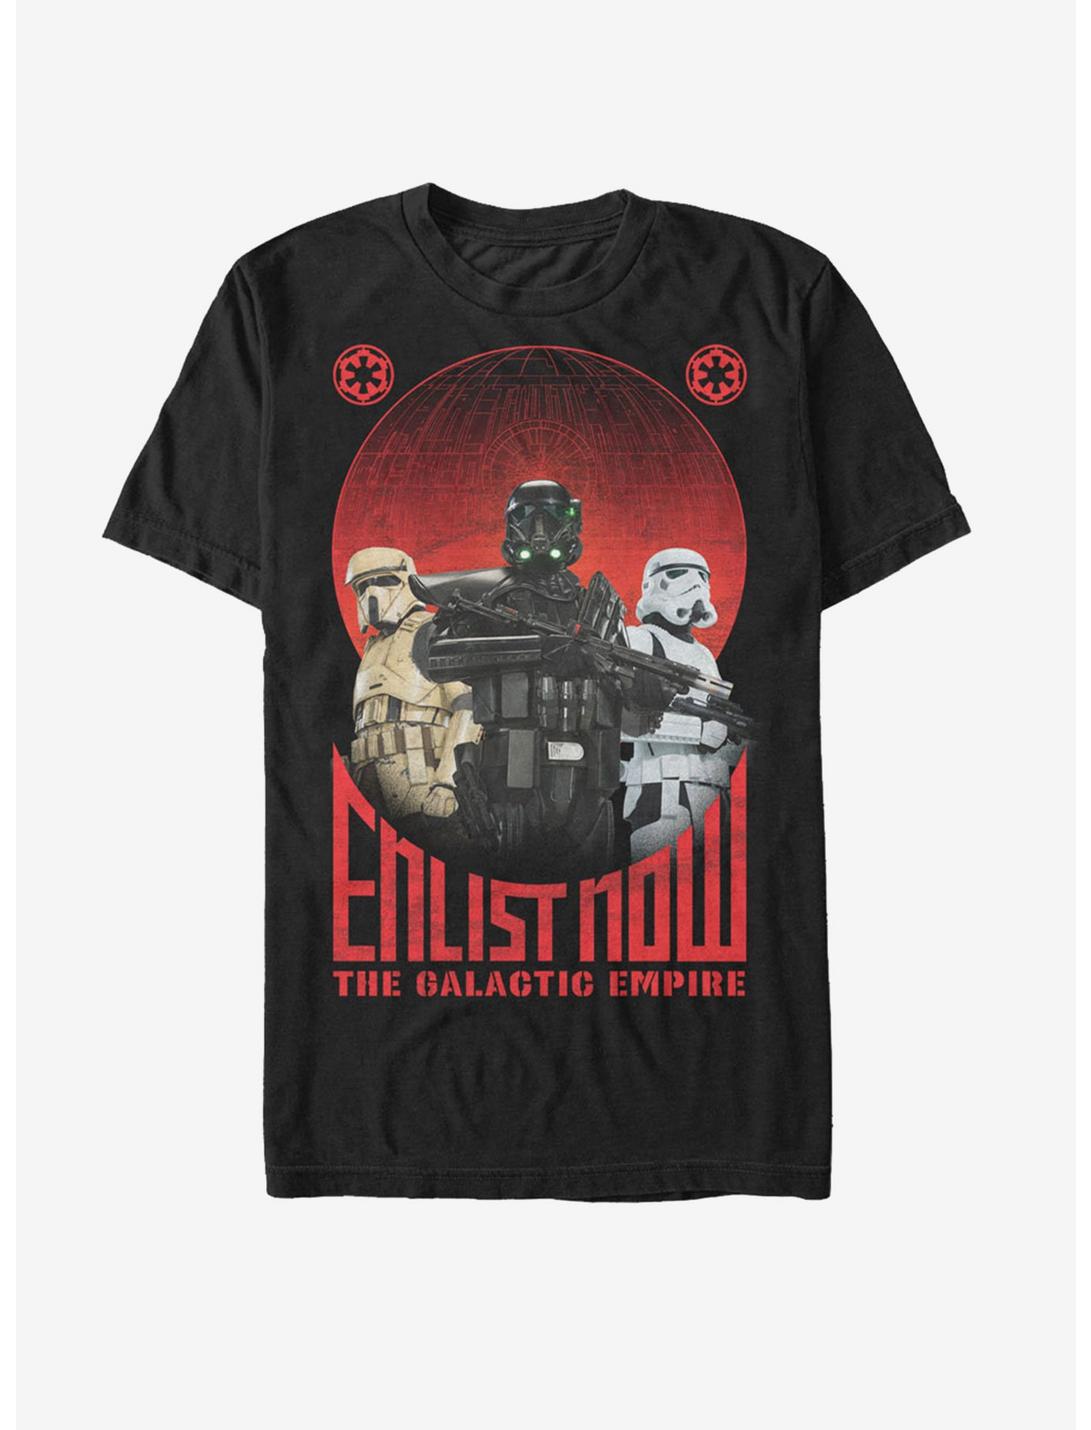 Star Wars Enlist Now Galactic Empire T-Shirt, BLACK, hi-res